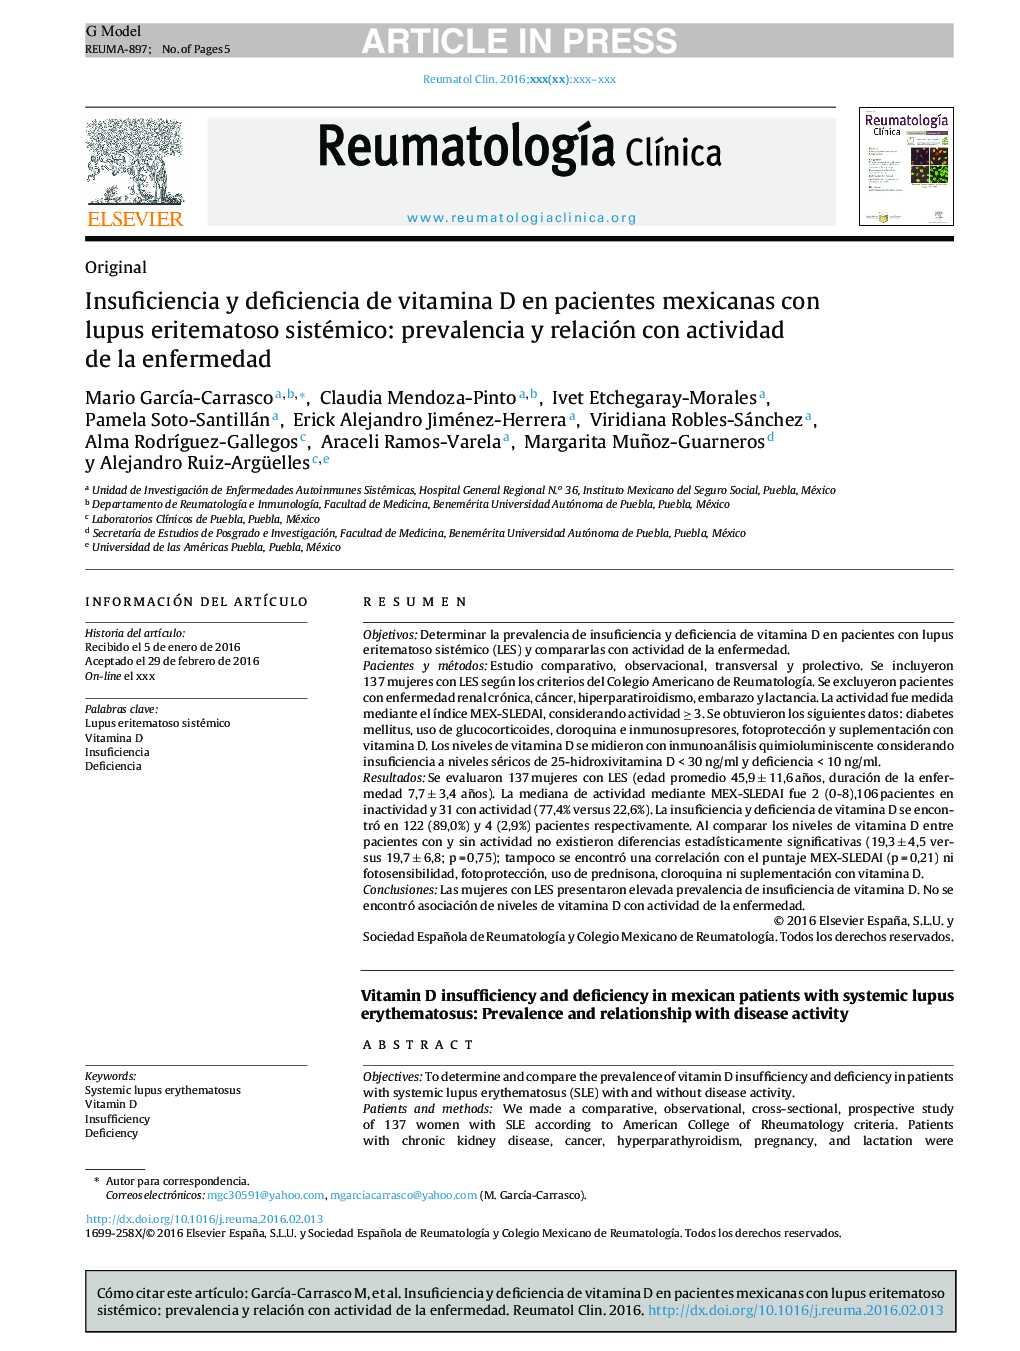 Insuficiencia y deficiencia de vitamina D en pacientes mexicanas con lupus eritematoso sistémico: prevalencia y relación con actividad de la enfermedad